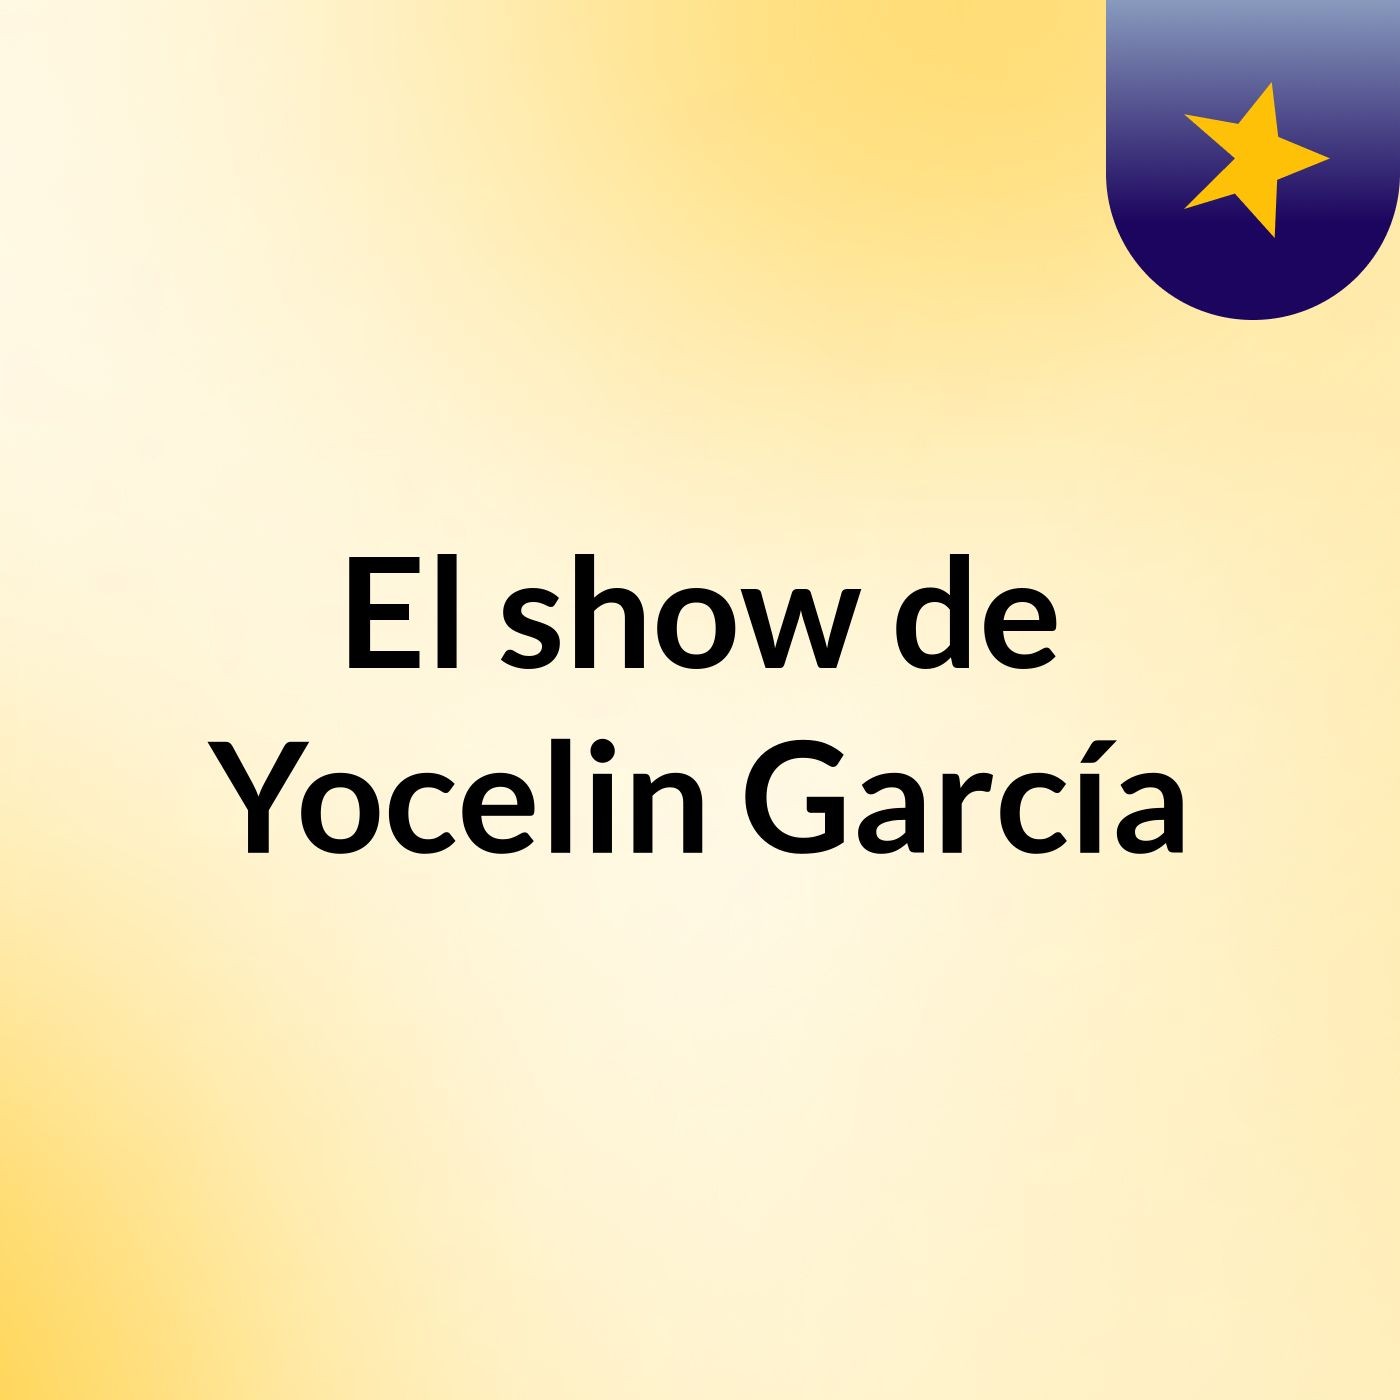 El show de Yocelin García